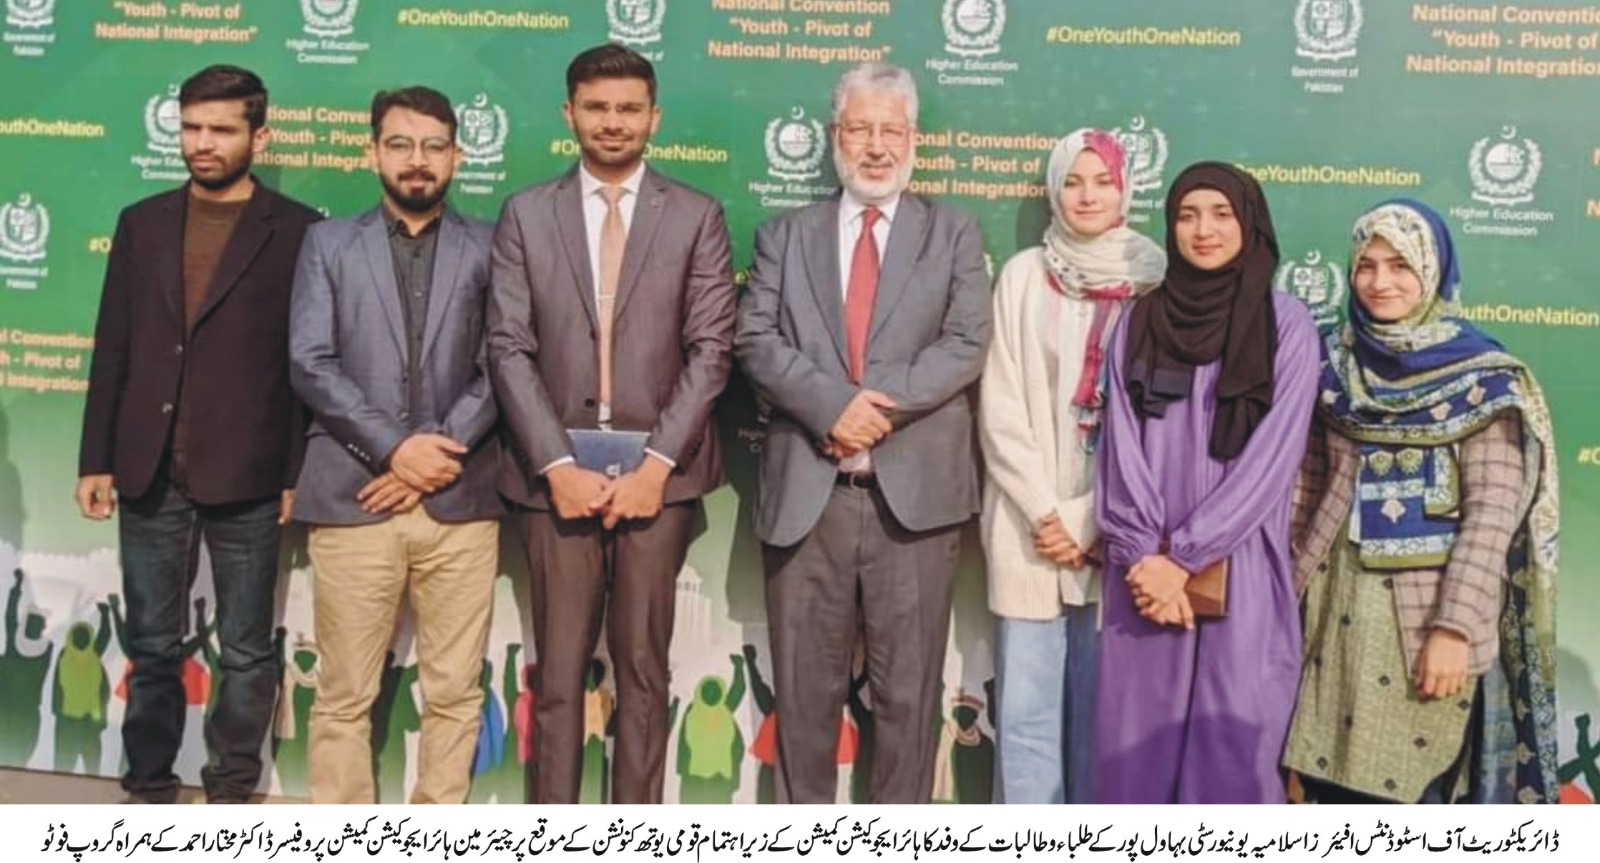 DSA delegation visit islamabad (urdu)